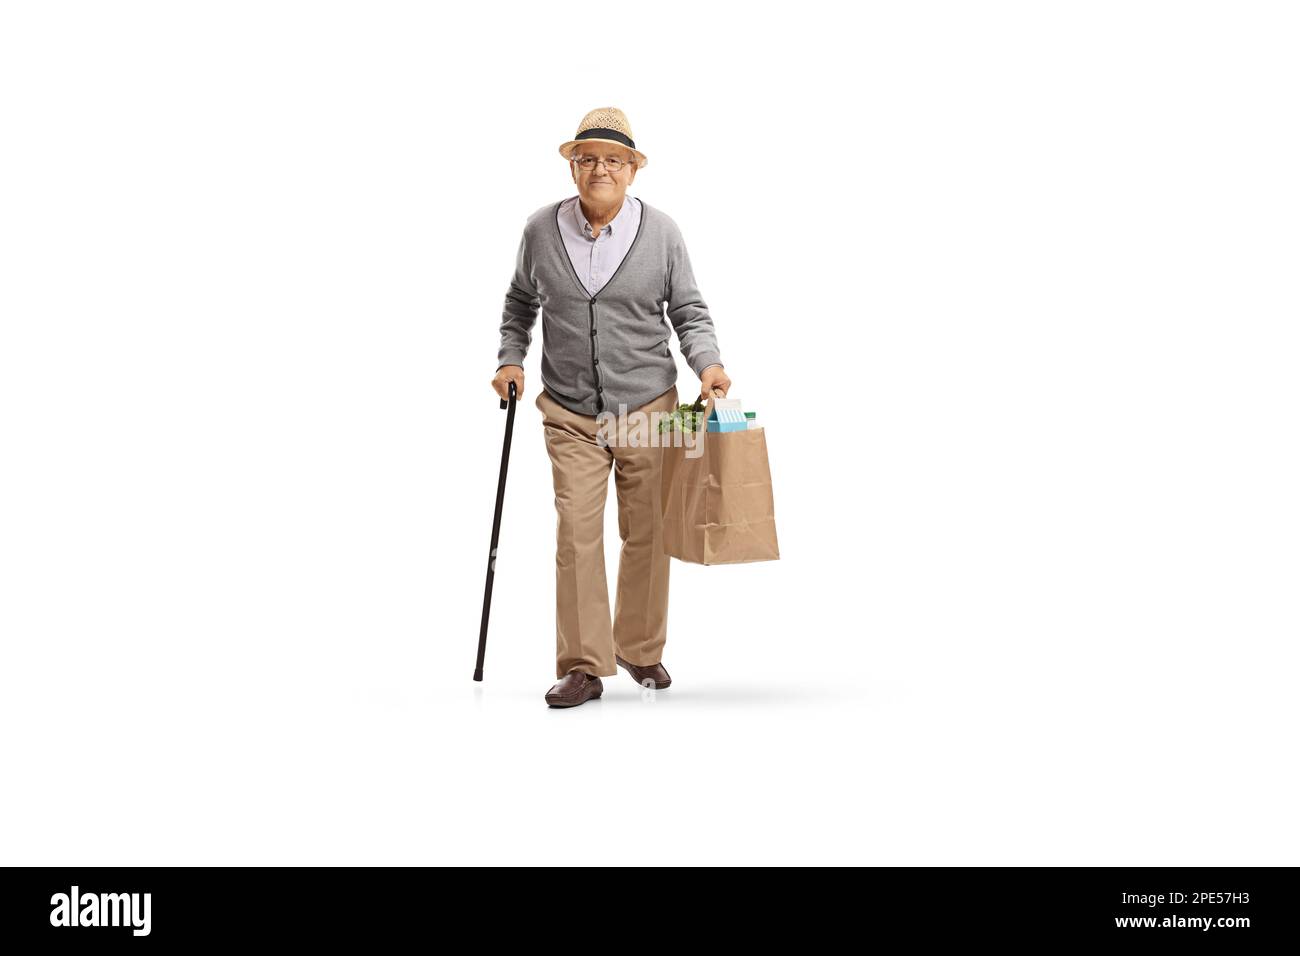 Das Gesamtbild eines älteren Mannes mit einem Gehstock, der eine Einkaufstasche aus Papier trägt, isoliert auf weißem Hintergrund Stockfoto